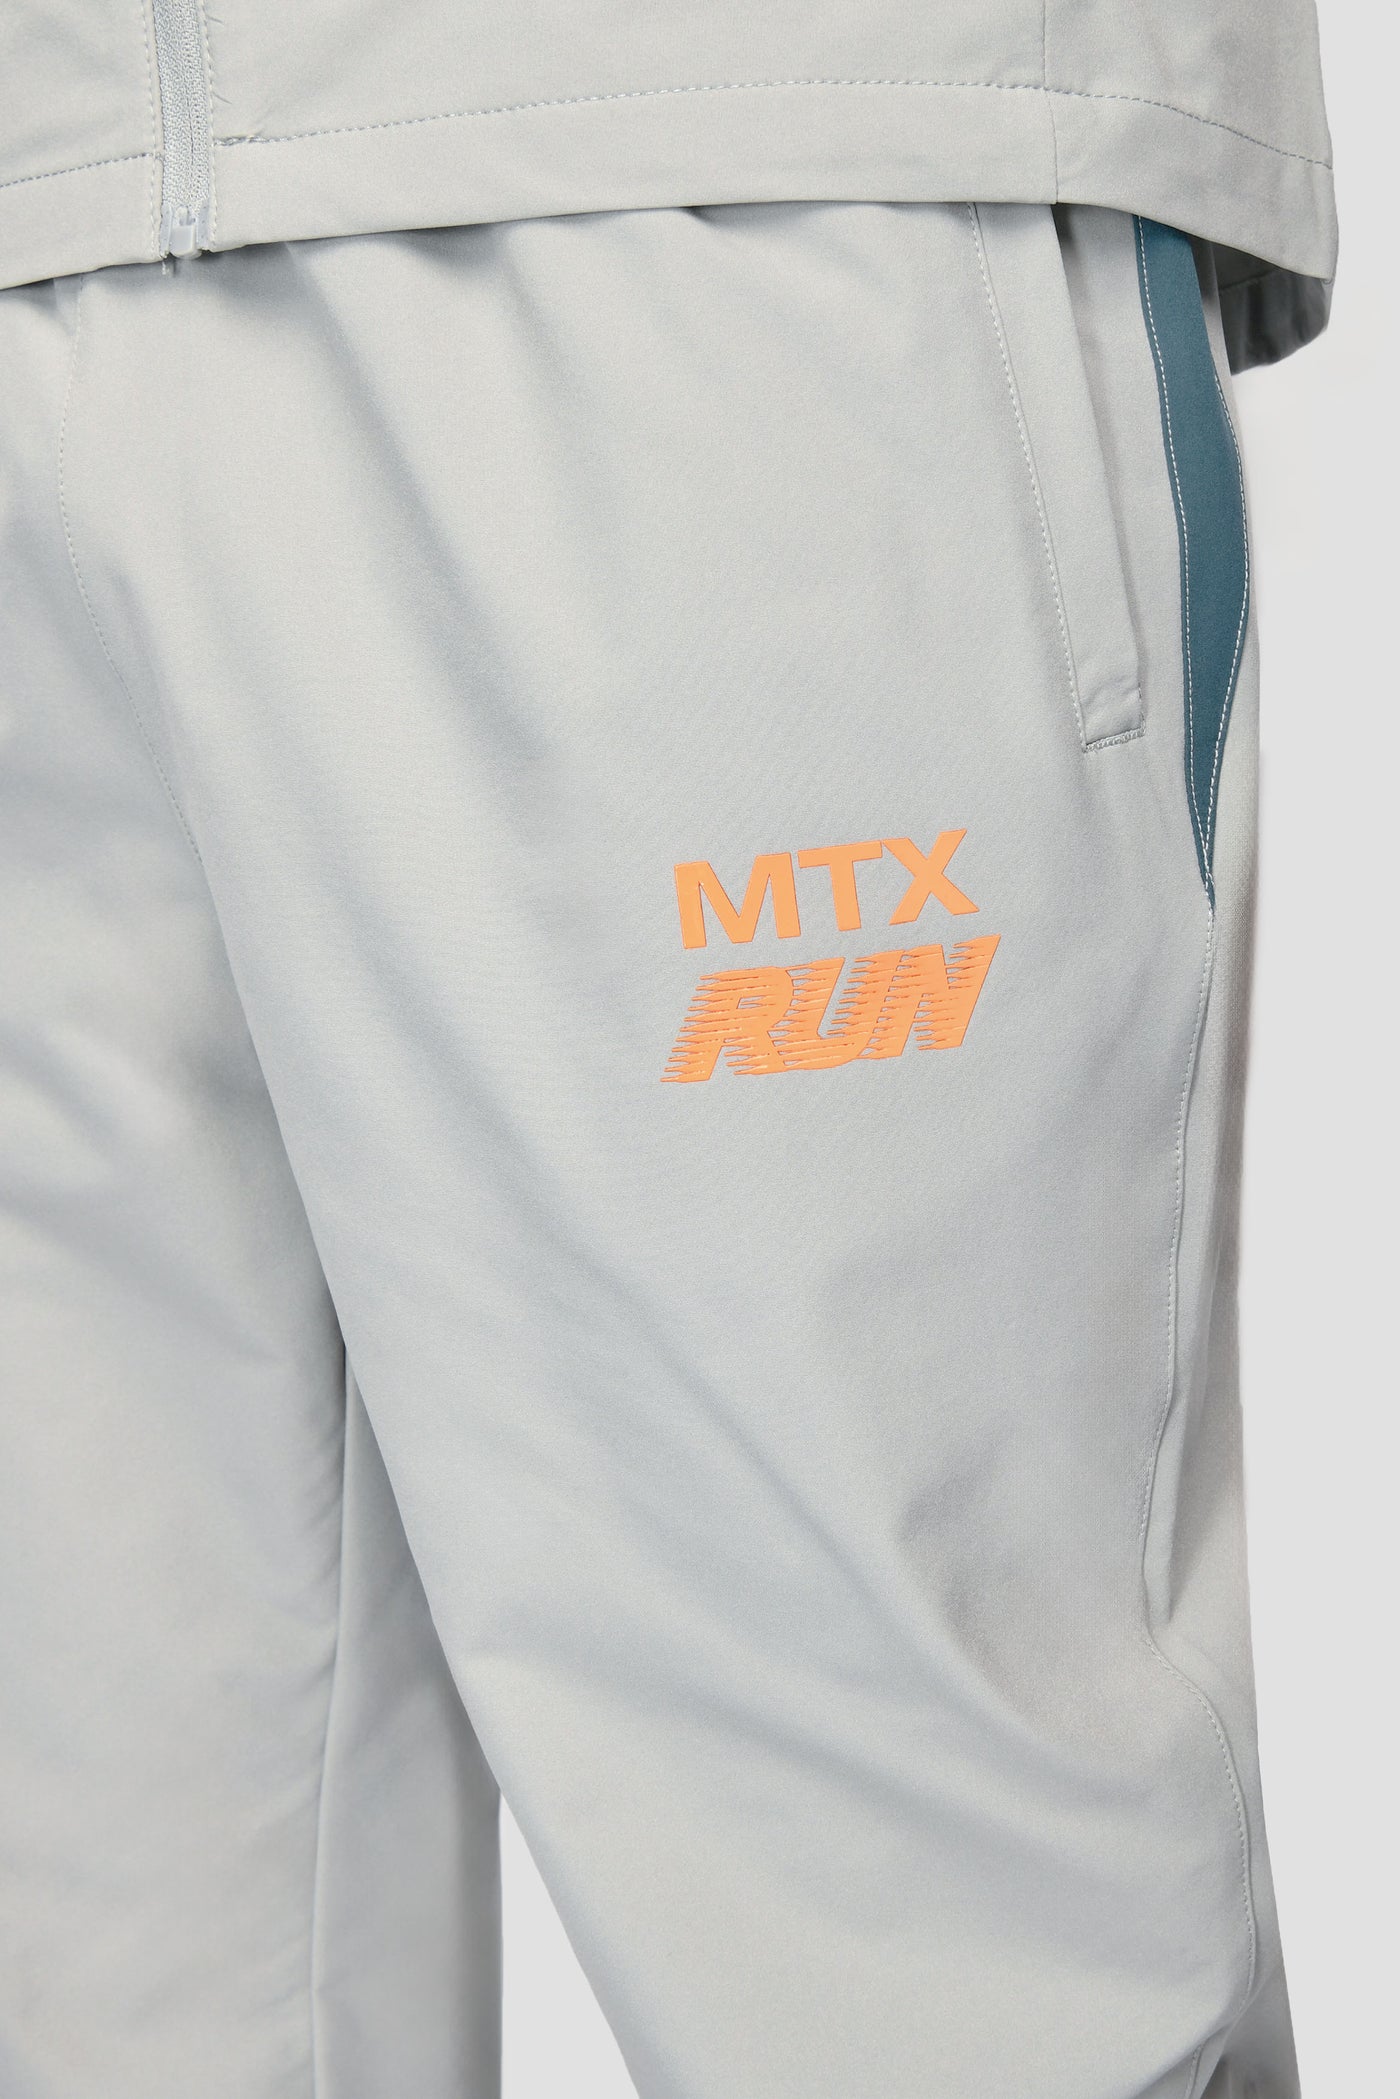 MONTIREX MTX RUN RUNNING PANTS - PLATINUM GREY/DEEP POND/ORANGE